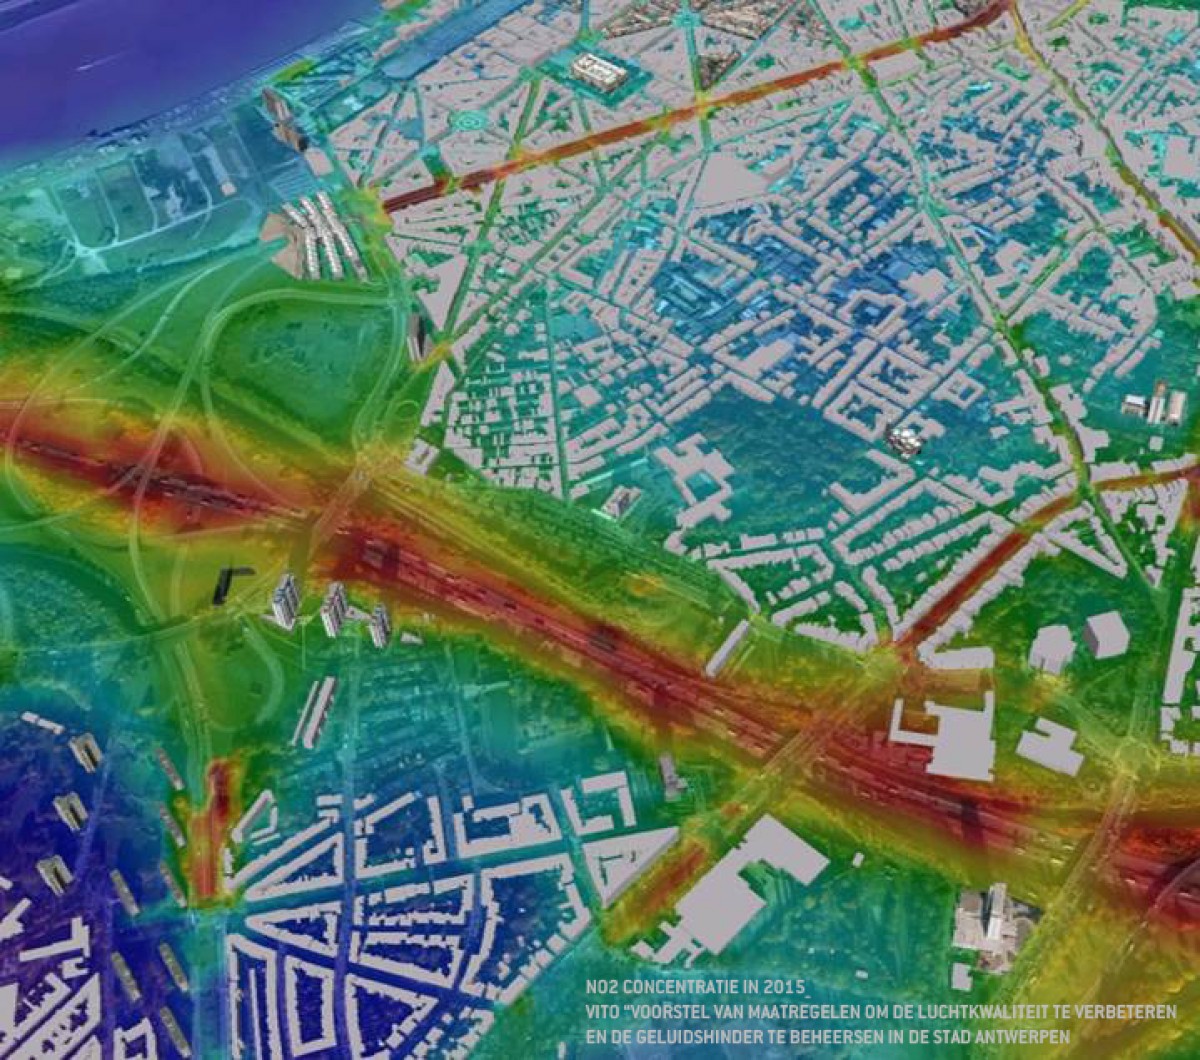 NO2 concentratie in 2015_ VITO “Voorstel van maatregelen om de luchtkwaliteit te verbeteren en de geluidshinder te beheersen in de stad Antwerpen